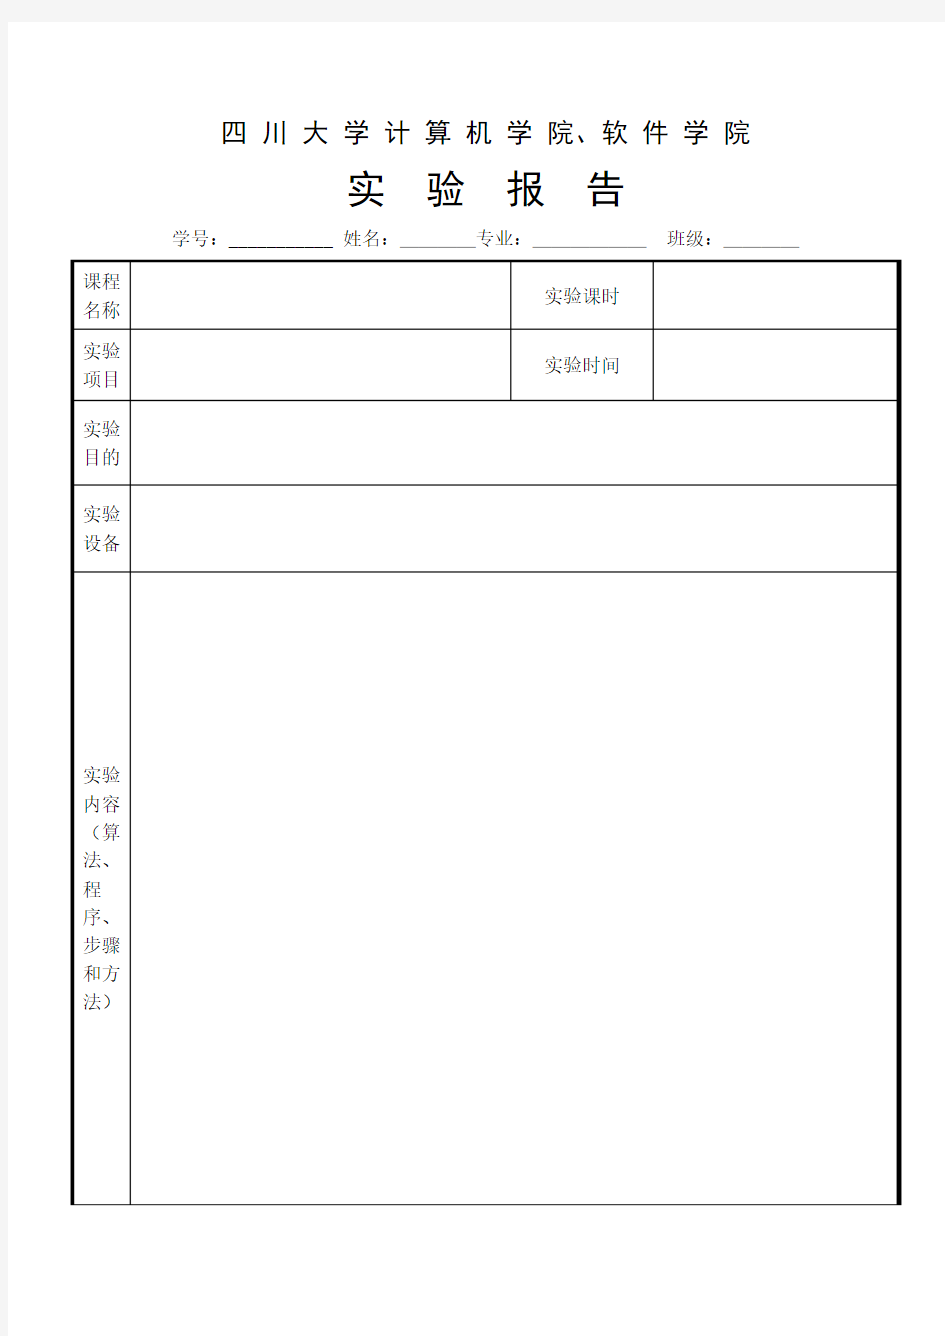 四川大学计算机(软件)学院学生实验报告格式